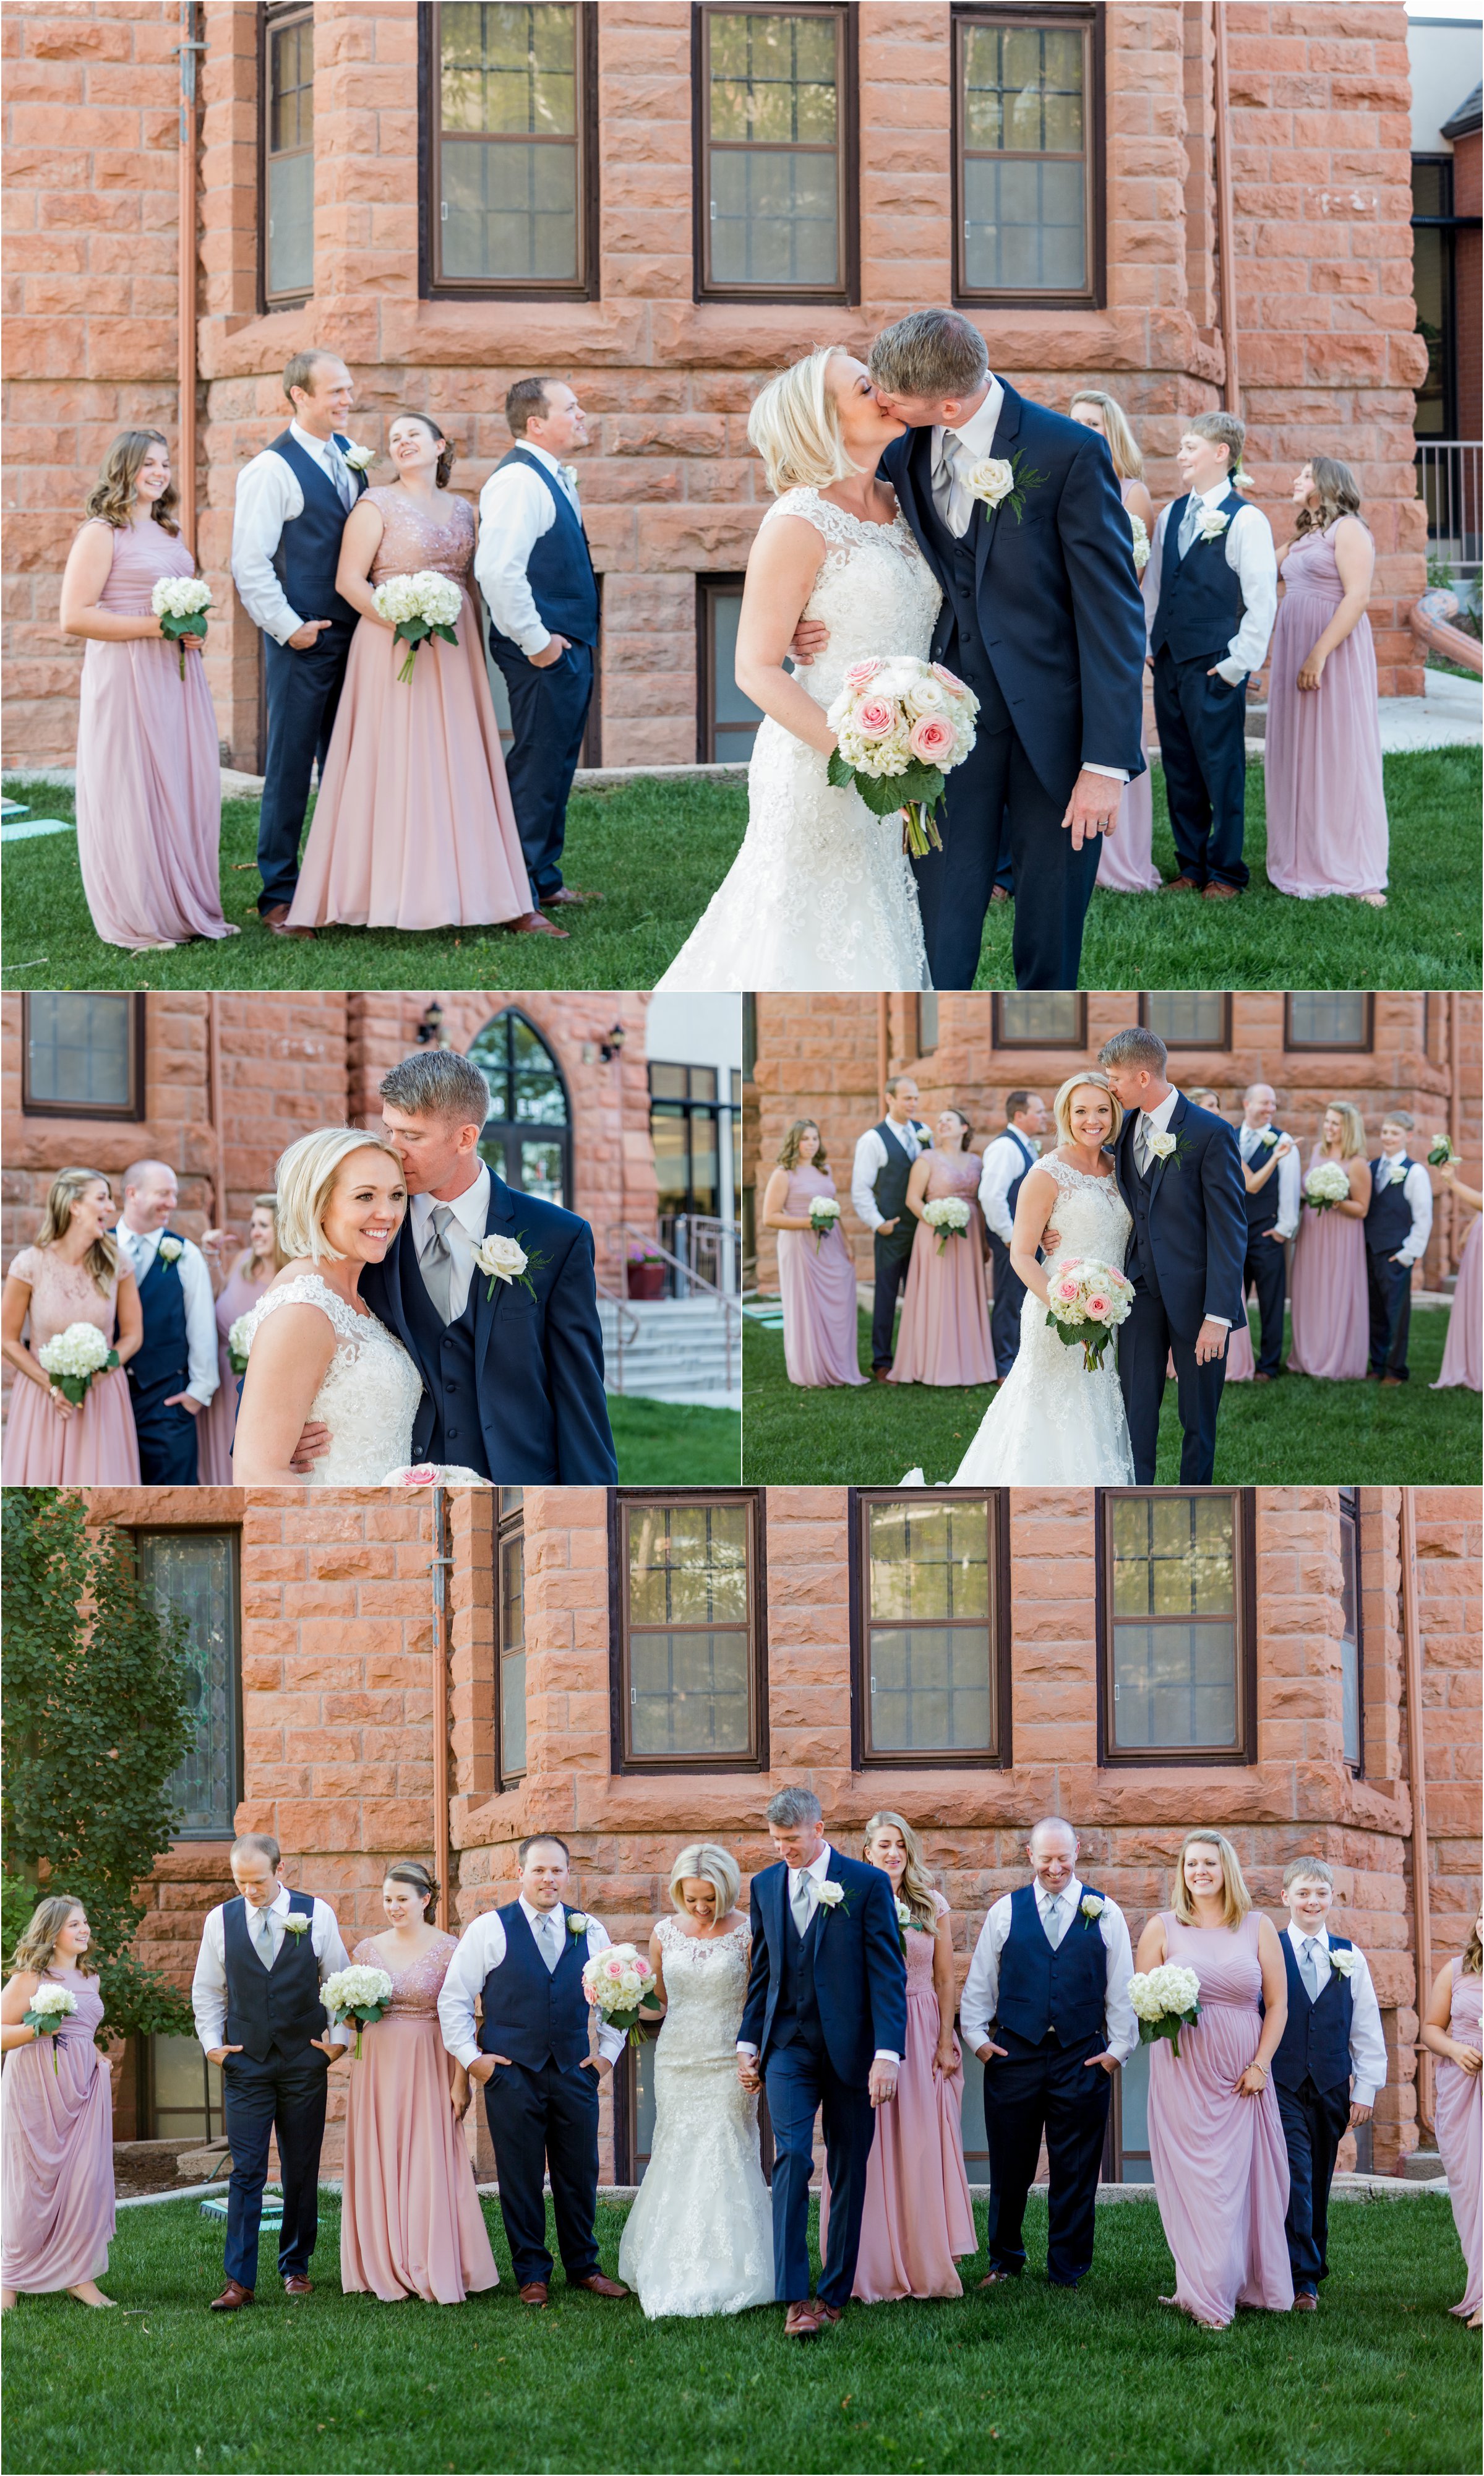 Cheyenne, Wyoming Church Wedding by Greeley, Colorado Wedding Photographer